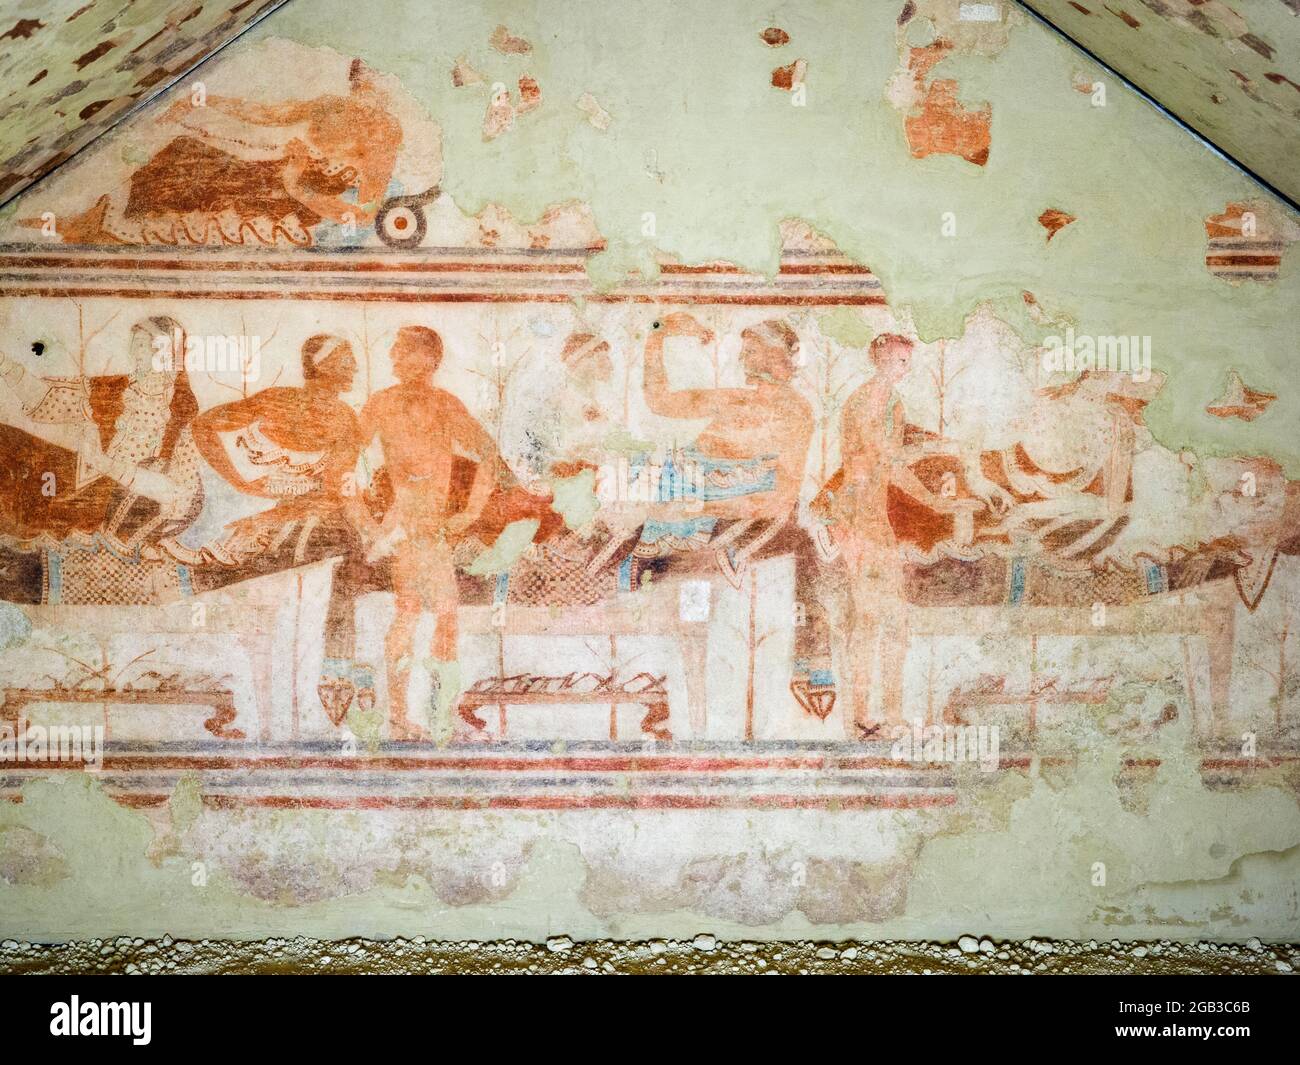 Mur peint en plein air à Tomba della nave (tombeau de bateau) 5e siècle avant JC - Musée archéologique national de Tarquinia, Italie Banque D'Images